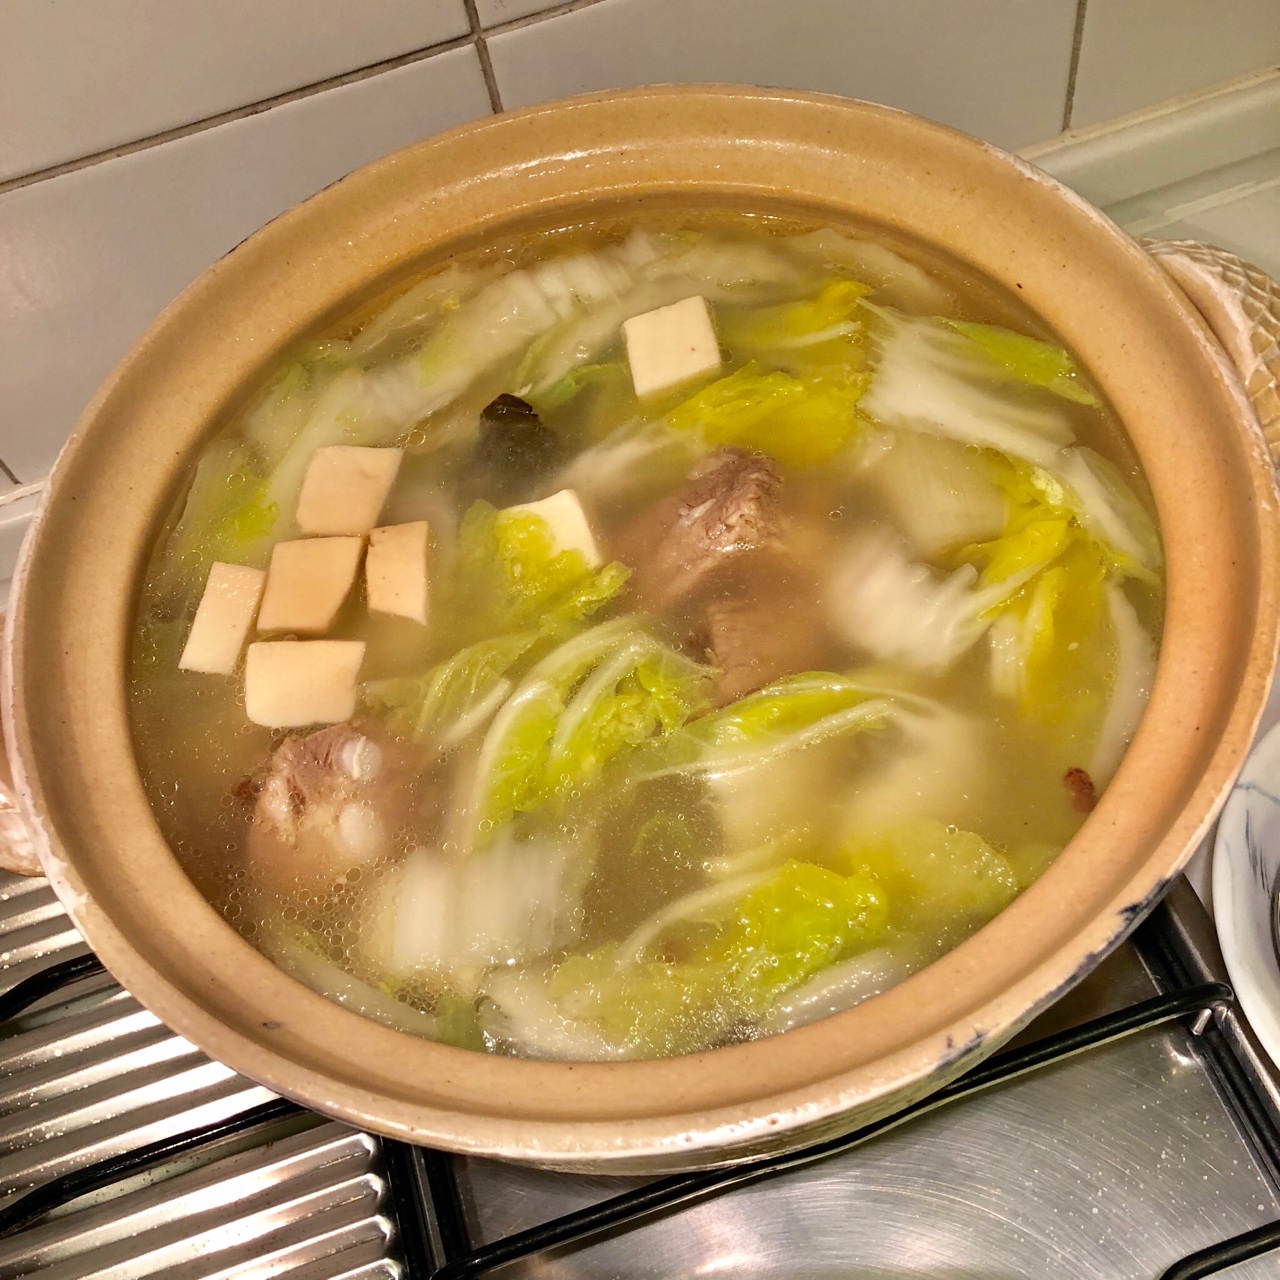 白菜豆腐排骨汤